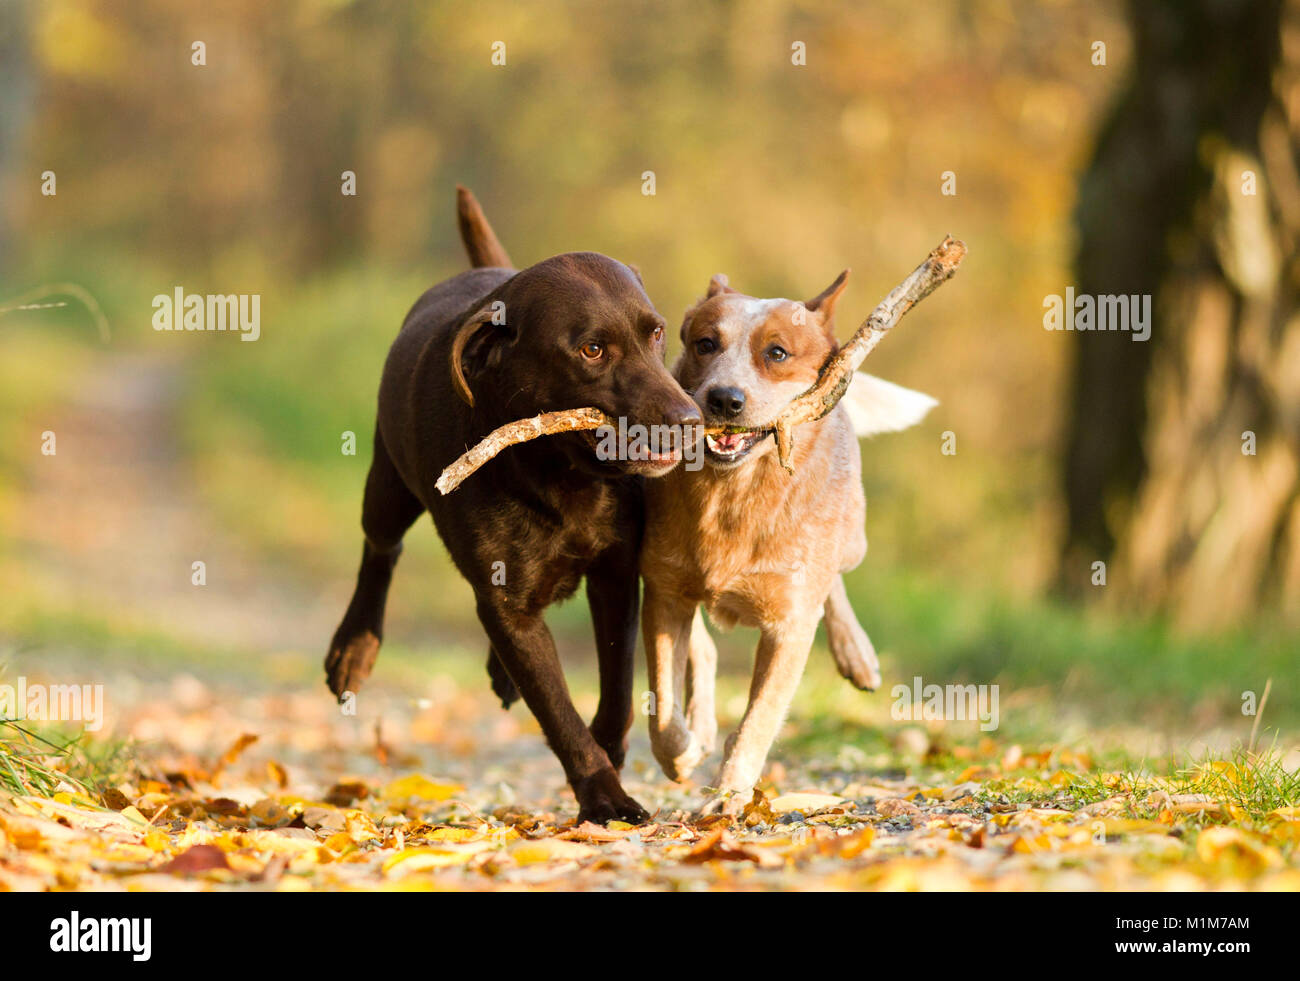 Perro de ganado australiano y Labrador Retriever llevando un palo. Alemania Foto de stock